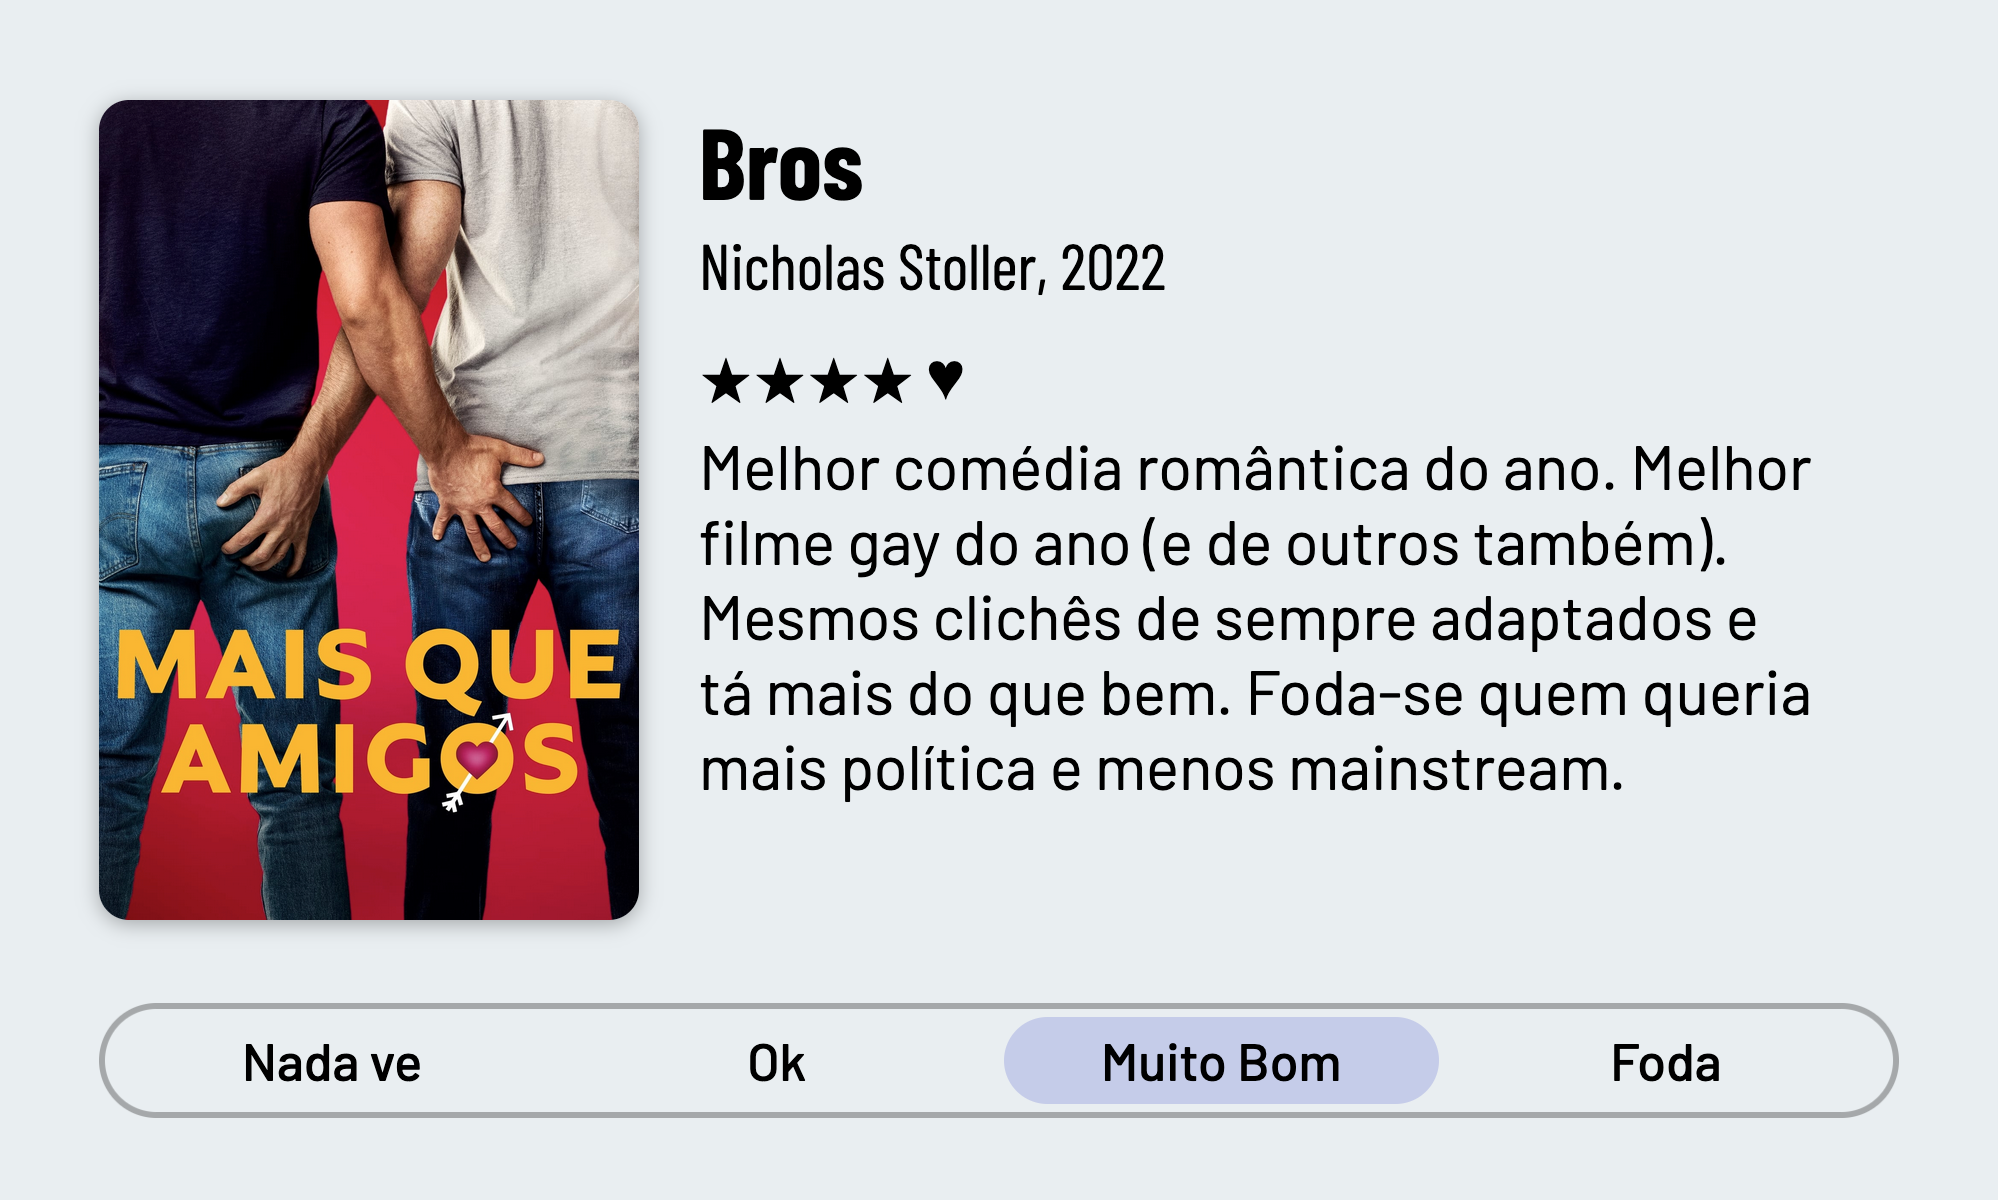 QuickReview do filme "Bros" de Nicholas Stoller com 4 estrelas que diz: "Melhor comédia romântica do ano. Melhor filme gay do ano (e de outros também). Mesmos clichês de sempre adaptados e tá mais do que bem. Foda-se quem queria mais política e menos mainstream."